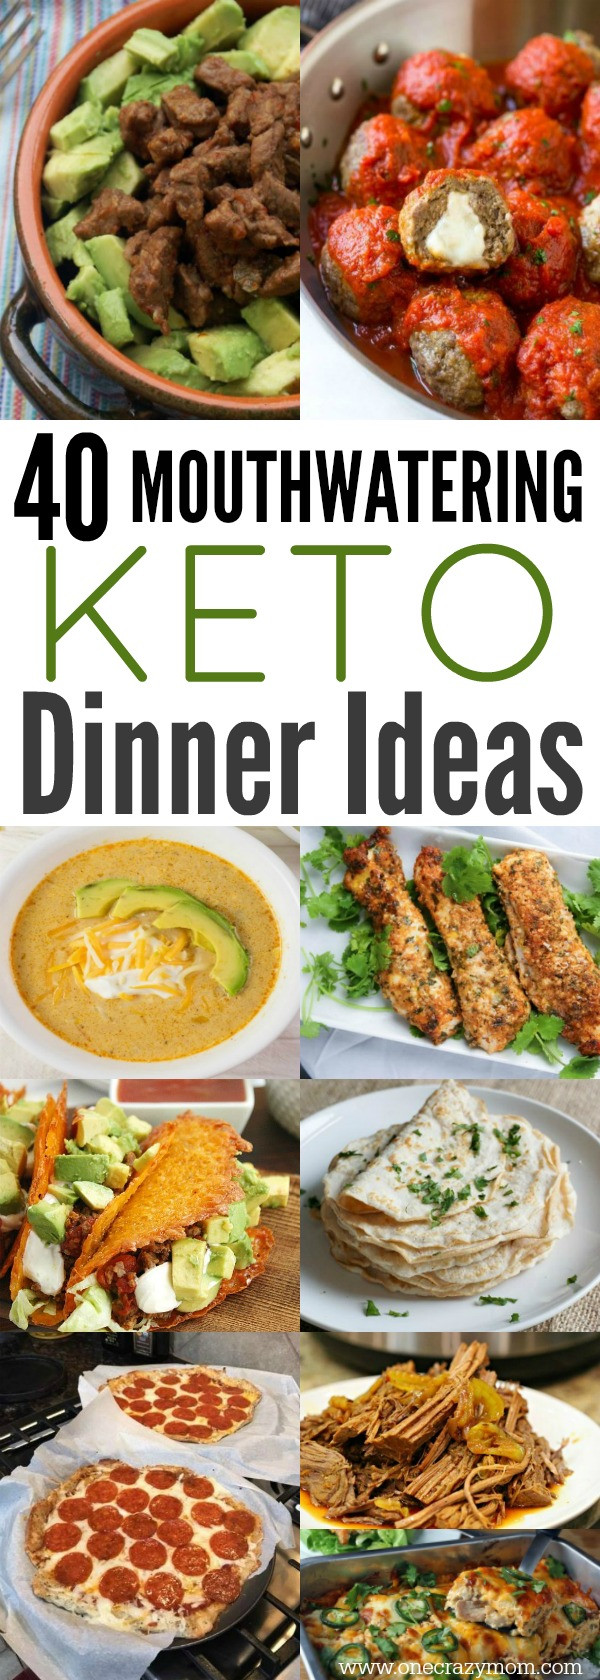 Fast Easy Keto Dinner
 Easy Keto Dinner Ideas 40 Easy Keto Dinner Recipes